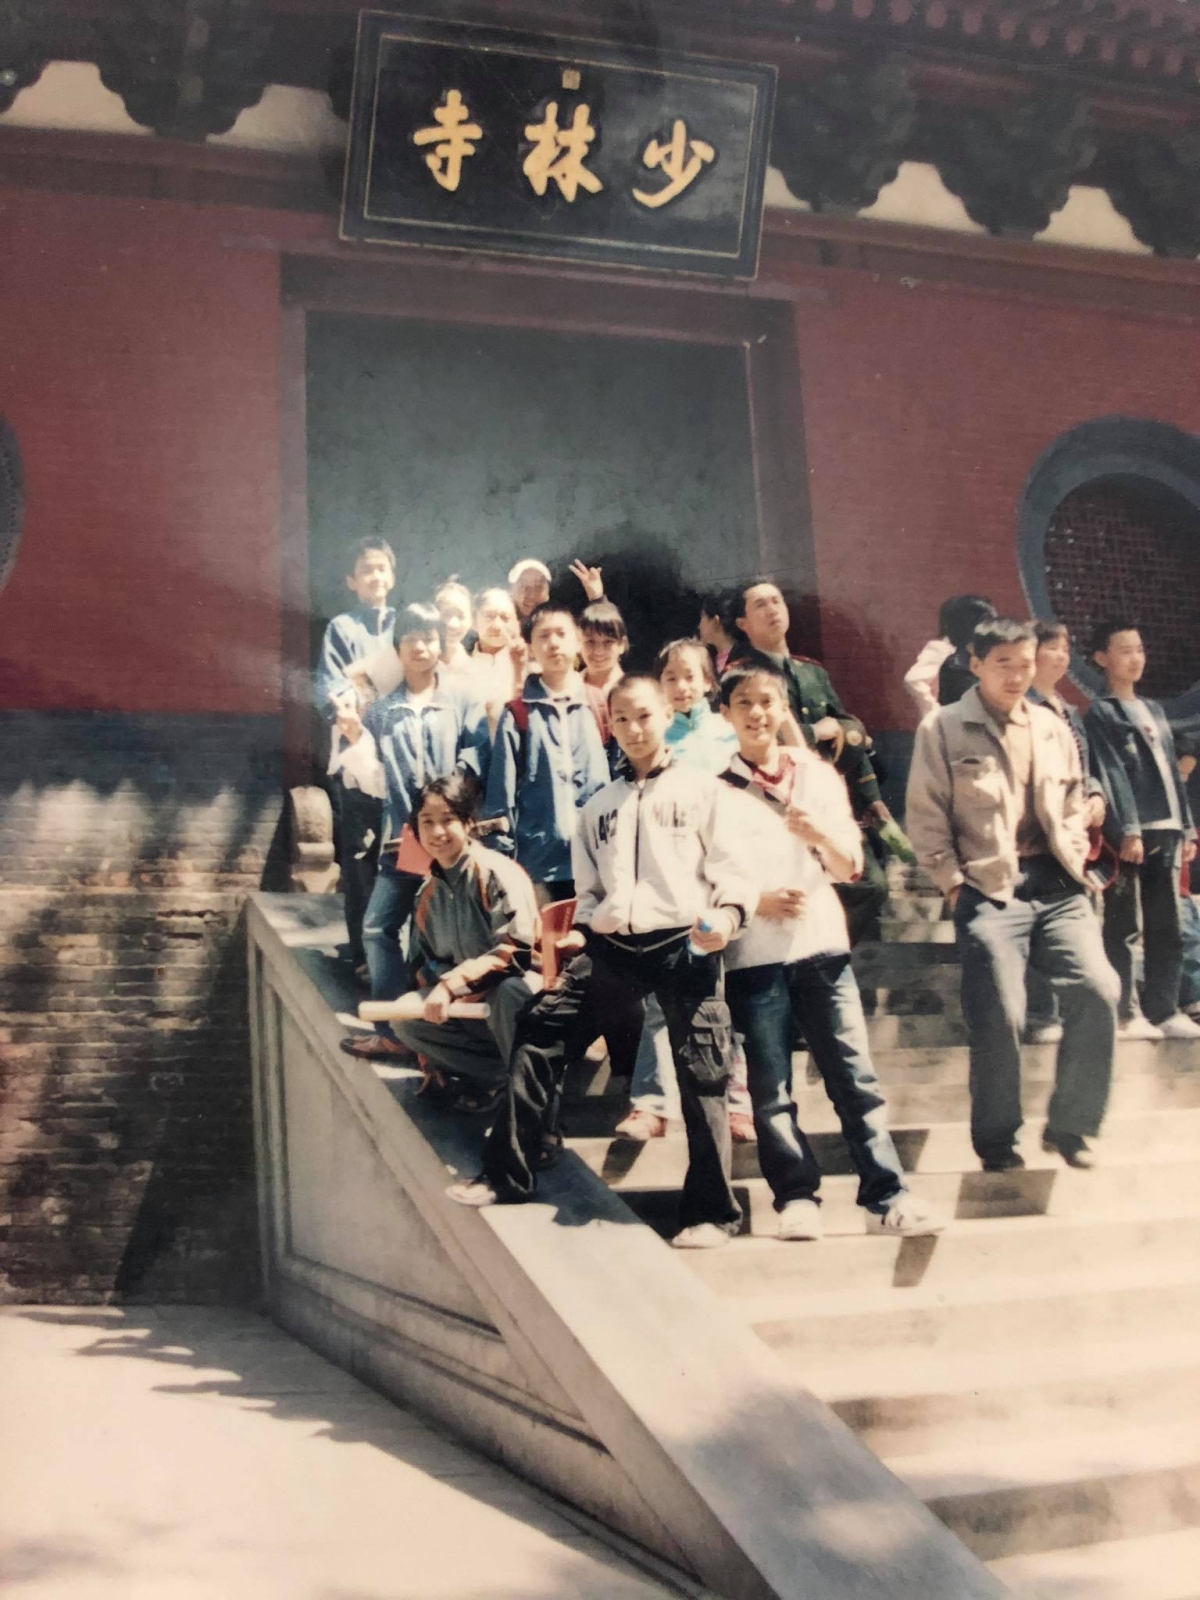 Vi Vi cùng bạn bè thăm Chùa Thiếu Lâm ở Trung Quốc khi đi tập huấn ở Trung Quốc năm 2006.